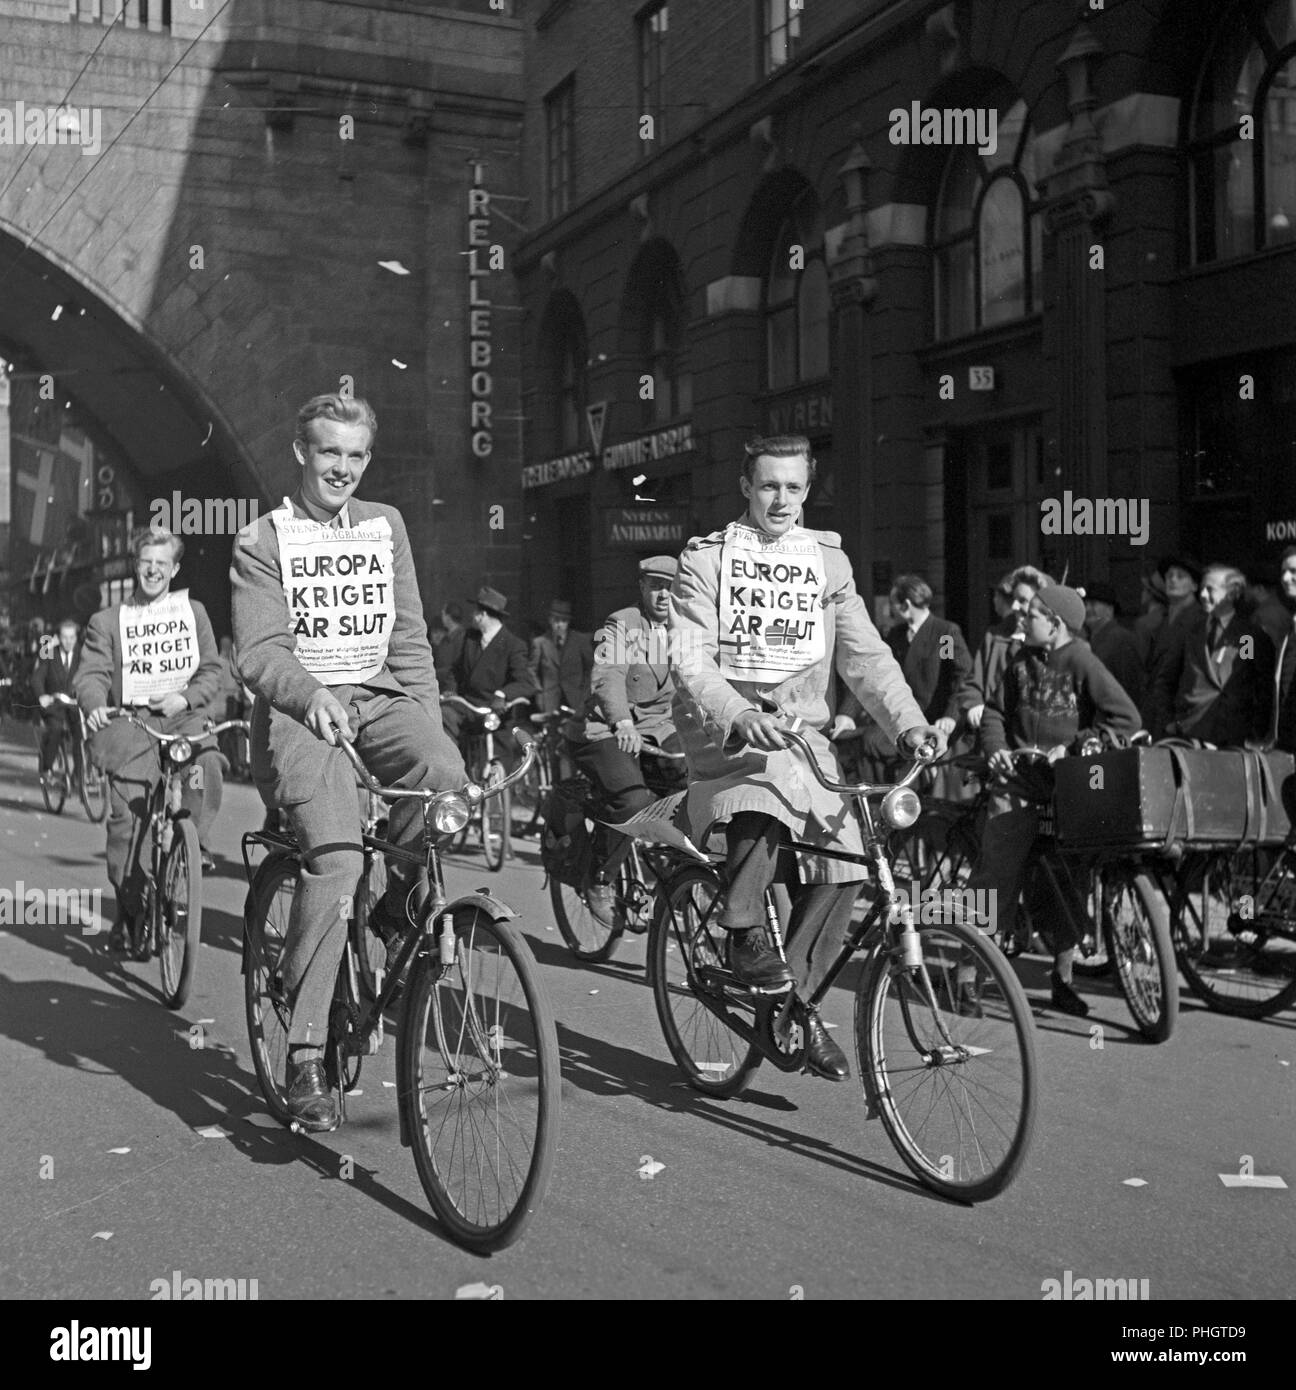 Frieden Feier 1945. Menschen in Stockholm feiern das Ende des Zweiten Weltkriegs. Die Männer auf ihre Fahrräder haben Schlagzeilen verbunden, die besagt, dass Krieg in Europa beendet wurde. Schweden 7. Mai 1945. Foto Kristoffersson N 122-6 Stockfoto